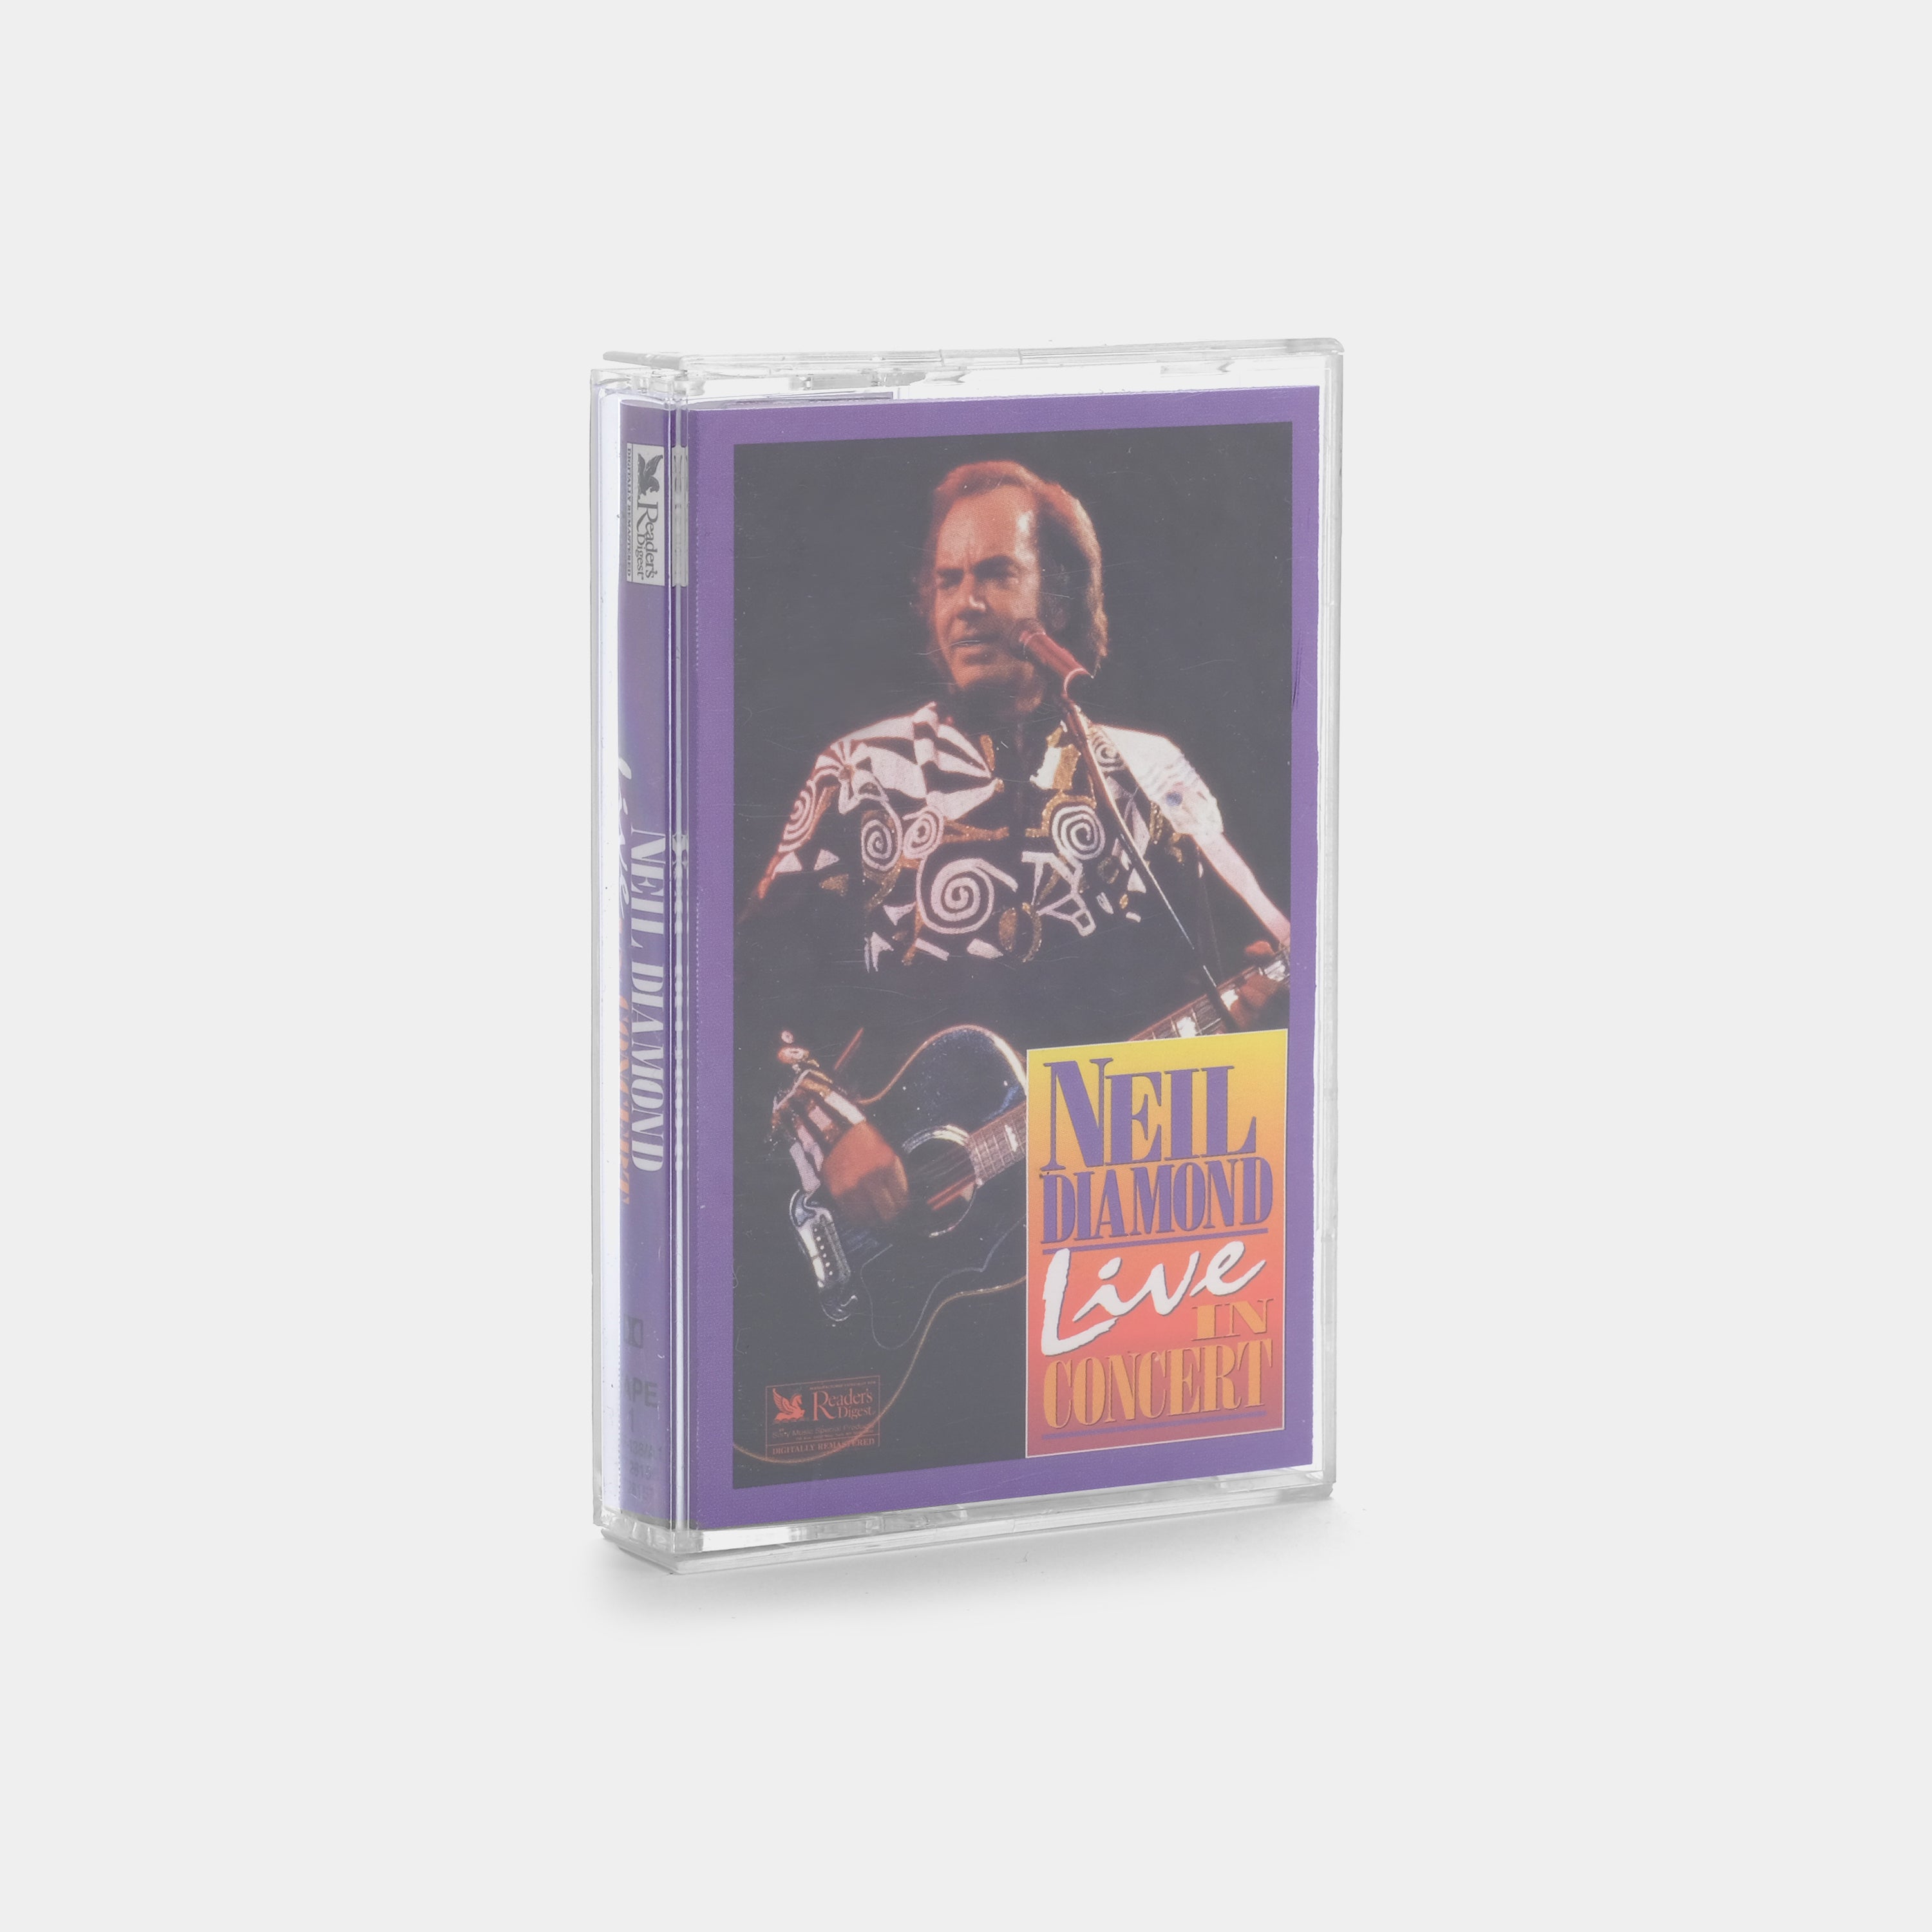 Neil Diamond - Live In Concert (Tape 1) Cassette Tape